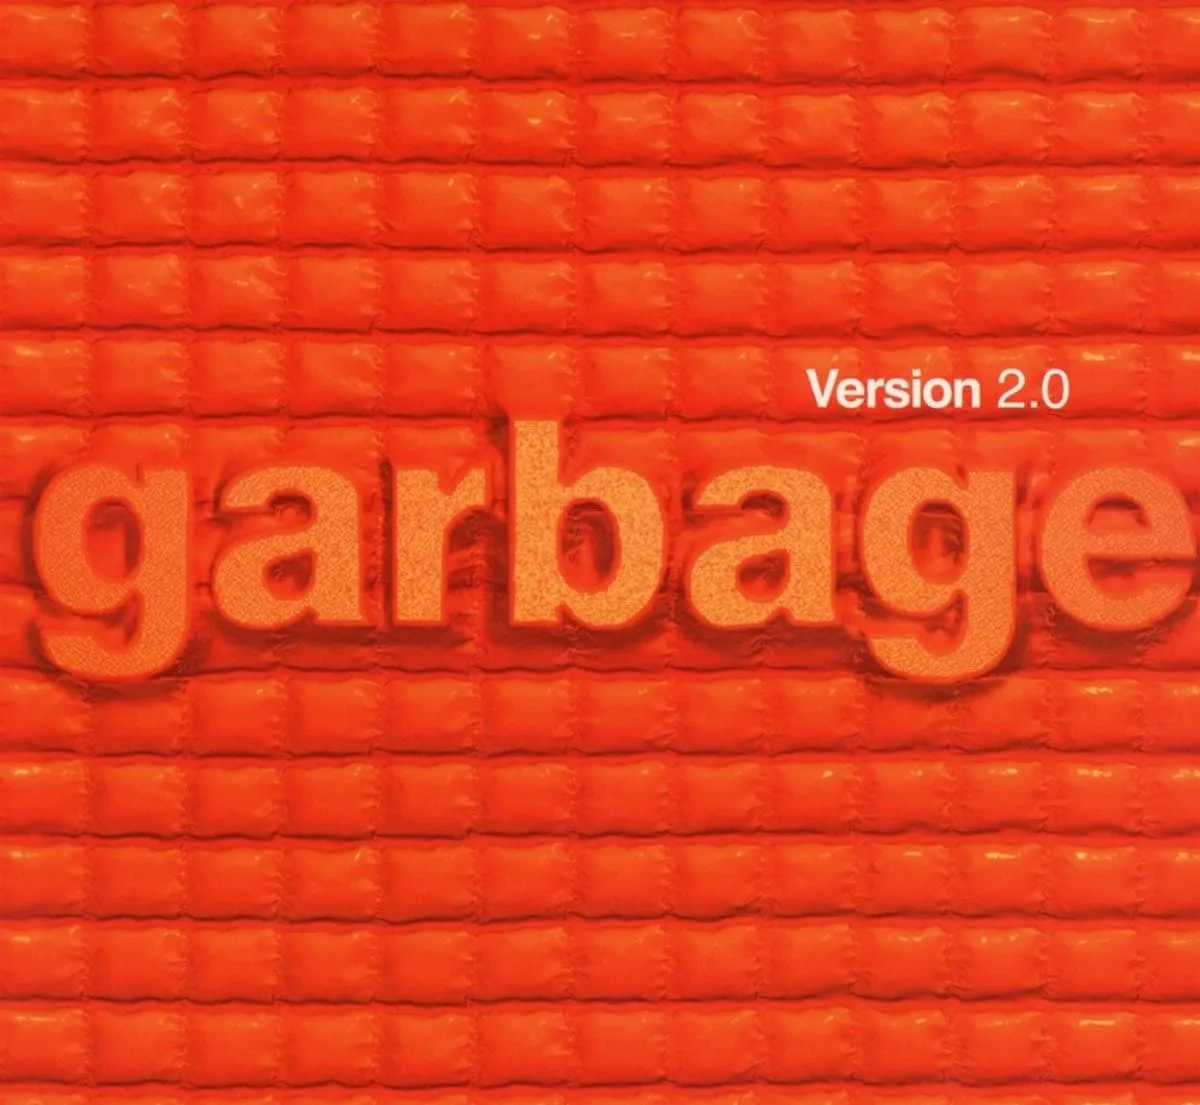 Garbage - Version 2.0 (Remastered) artwork